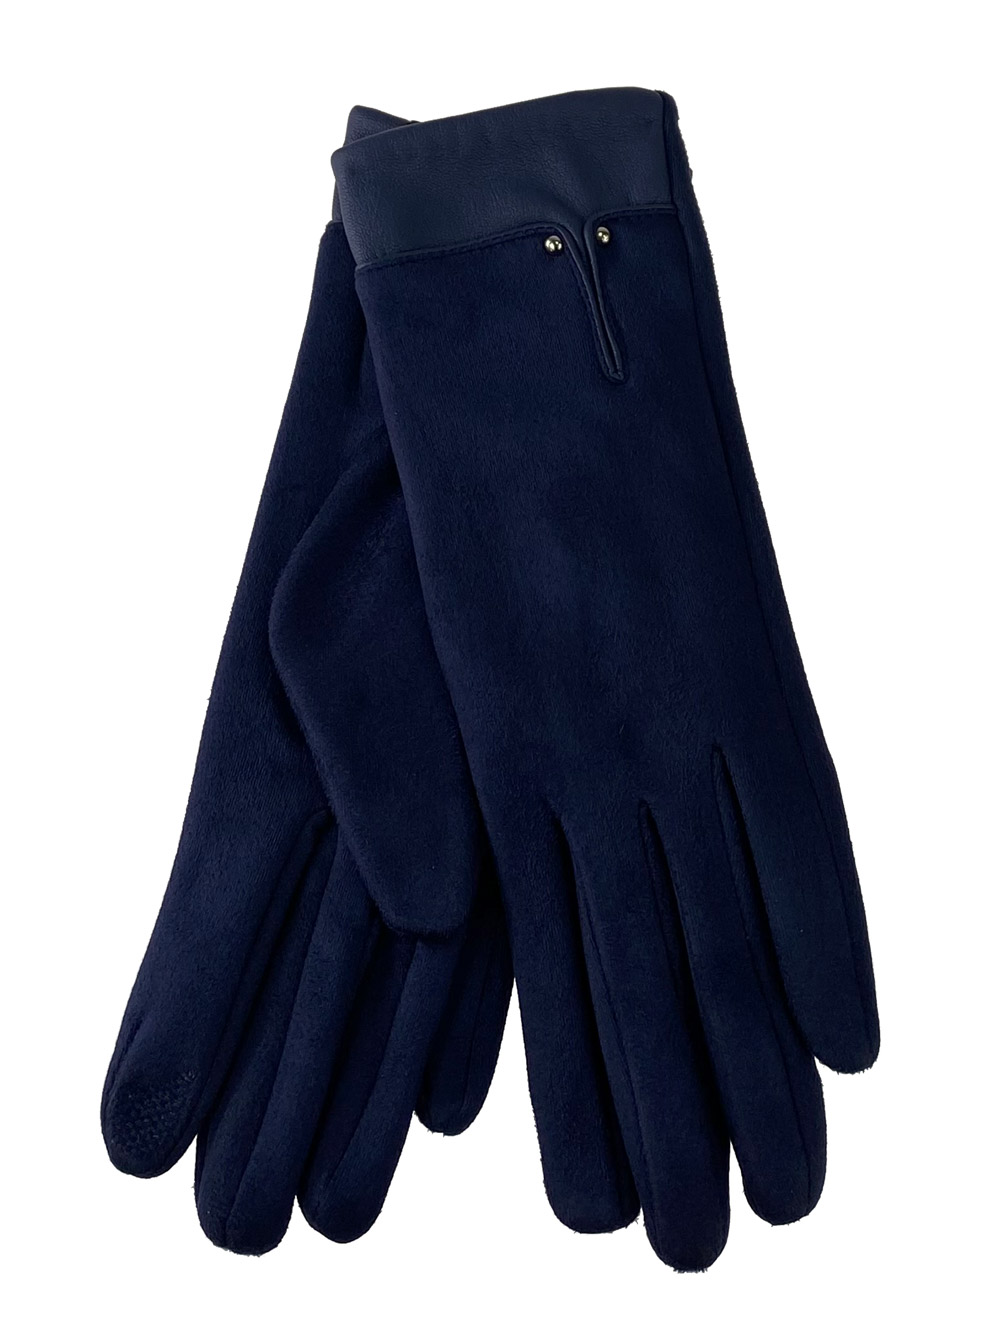 Велюровые женские перчатки с манжетой из натуральной кожи, цвет тёмно-синий